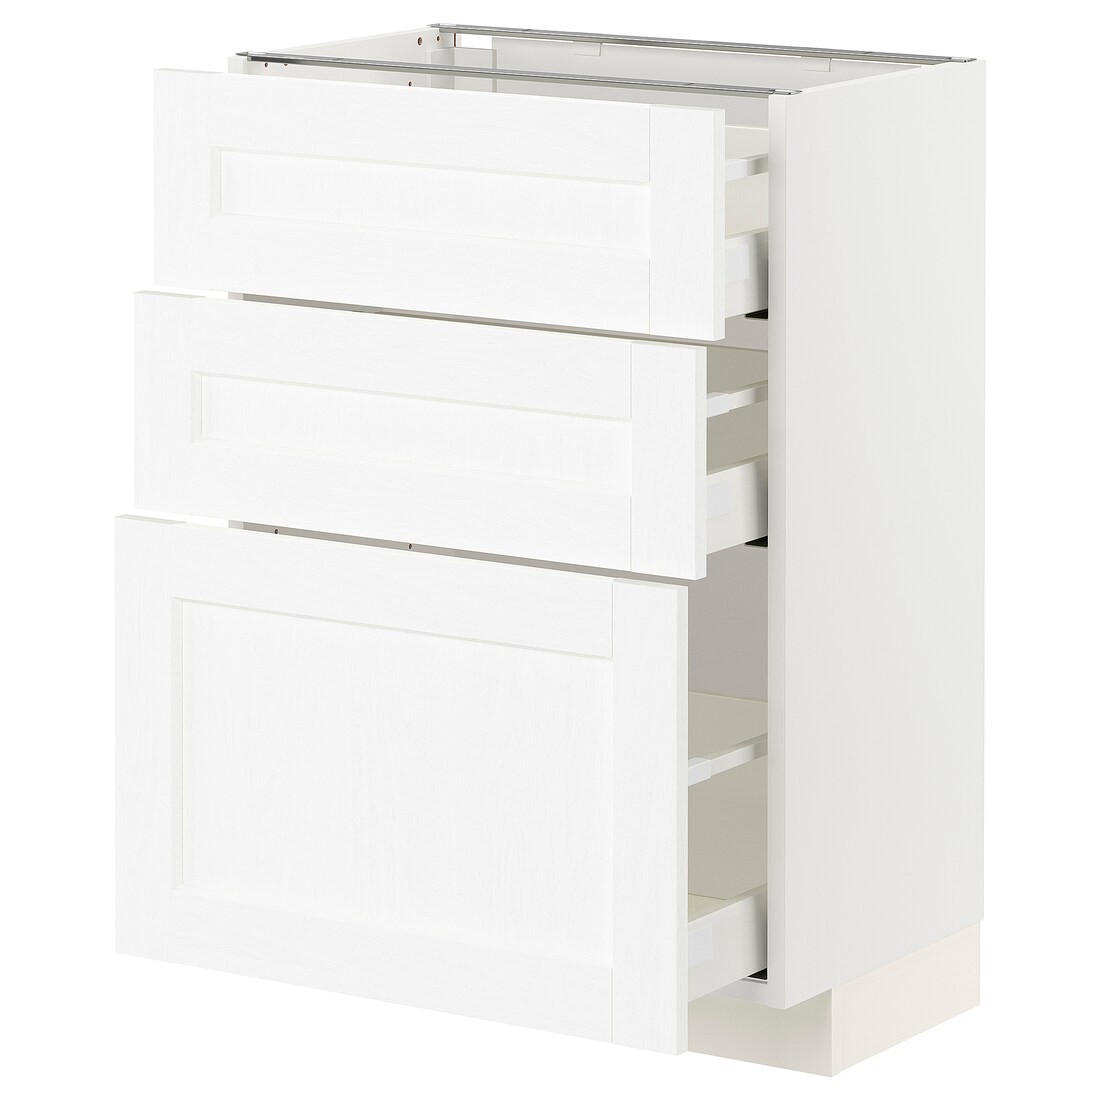 METOD МЕТОД / MAXIMERA МАКСИМЕРА Напольный шкаф с 3 ящиками, белый Enköping / белый имитация дерева, 60x37 см